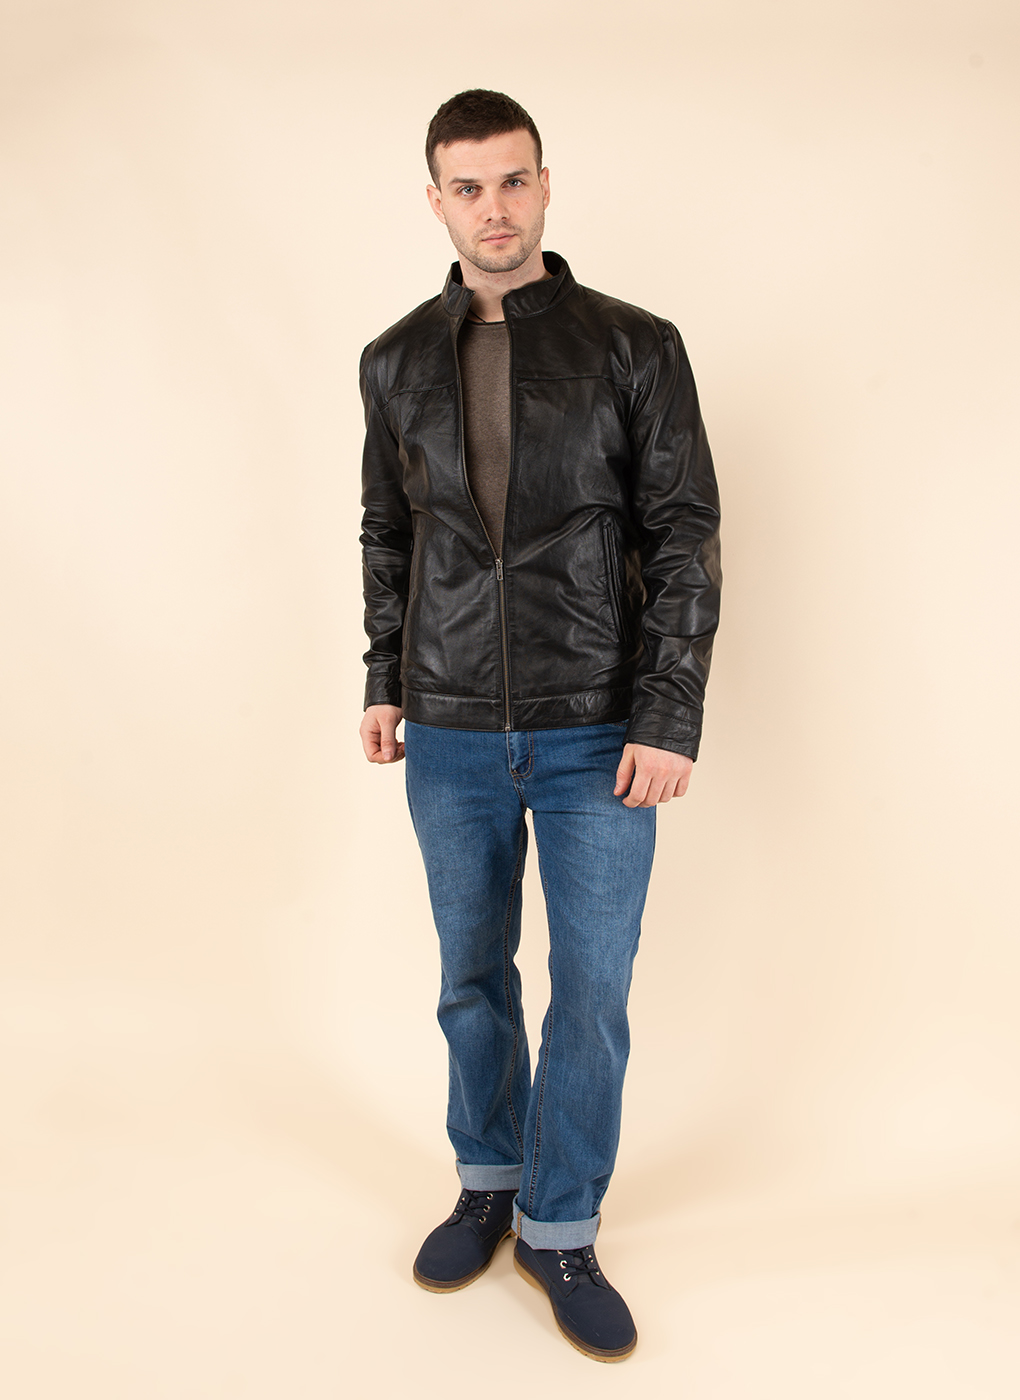 Кожаная куртка мужская Каляев 62649 черная 50 RU